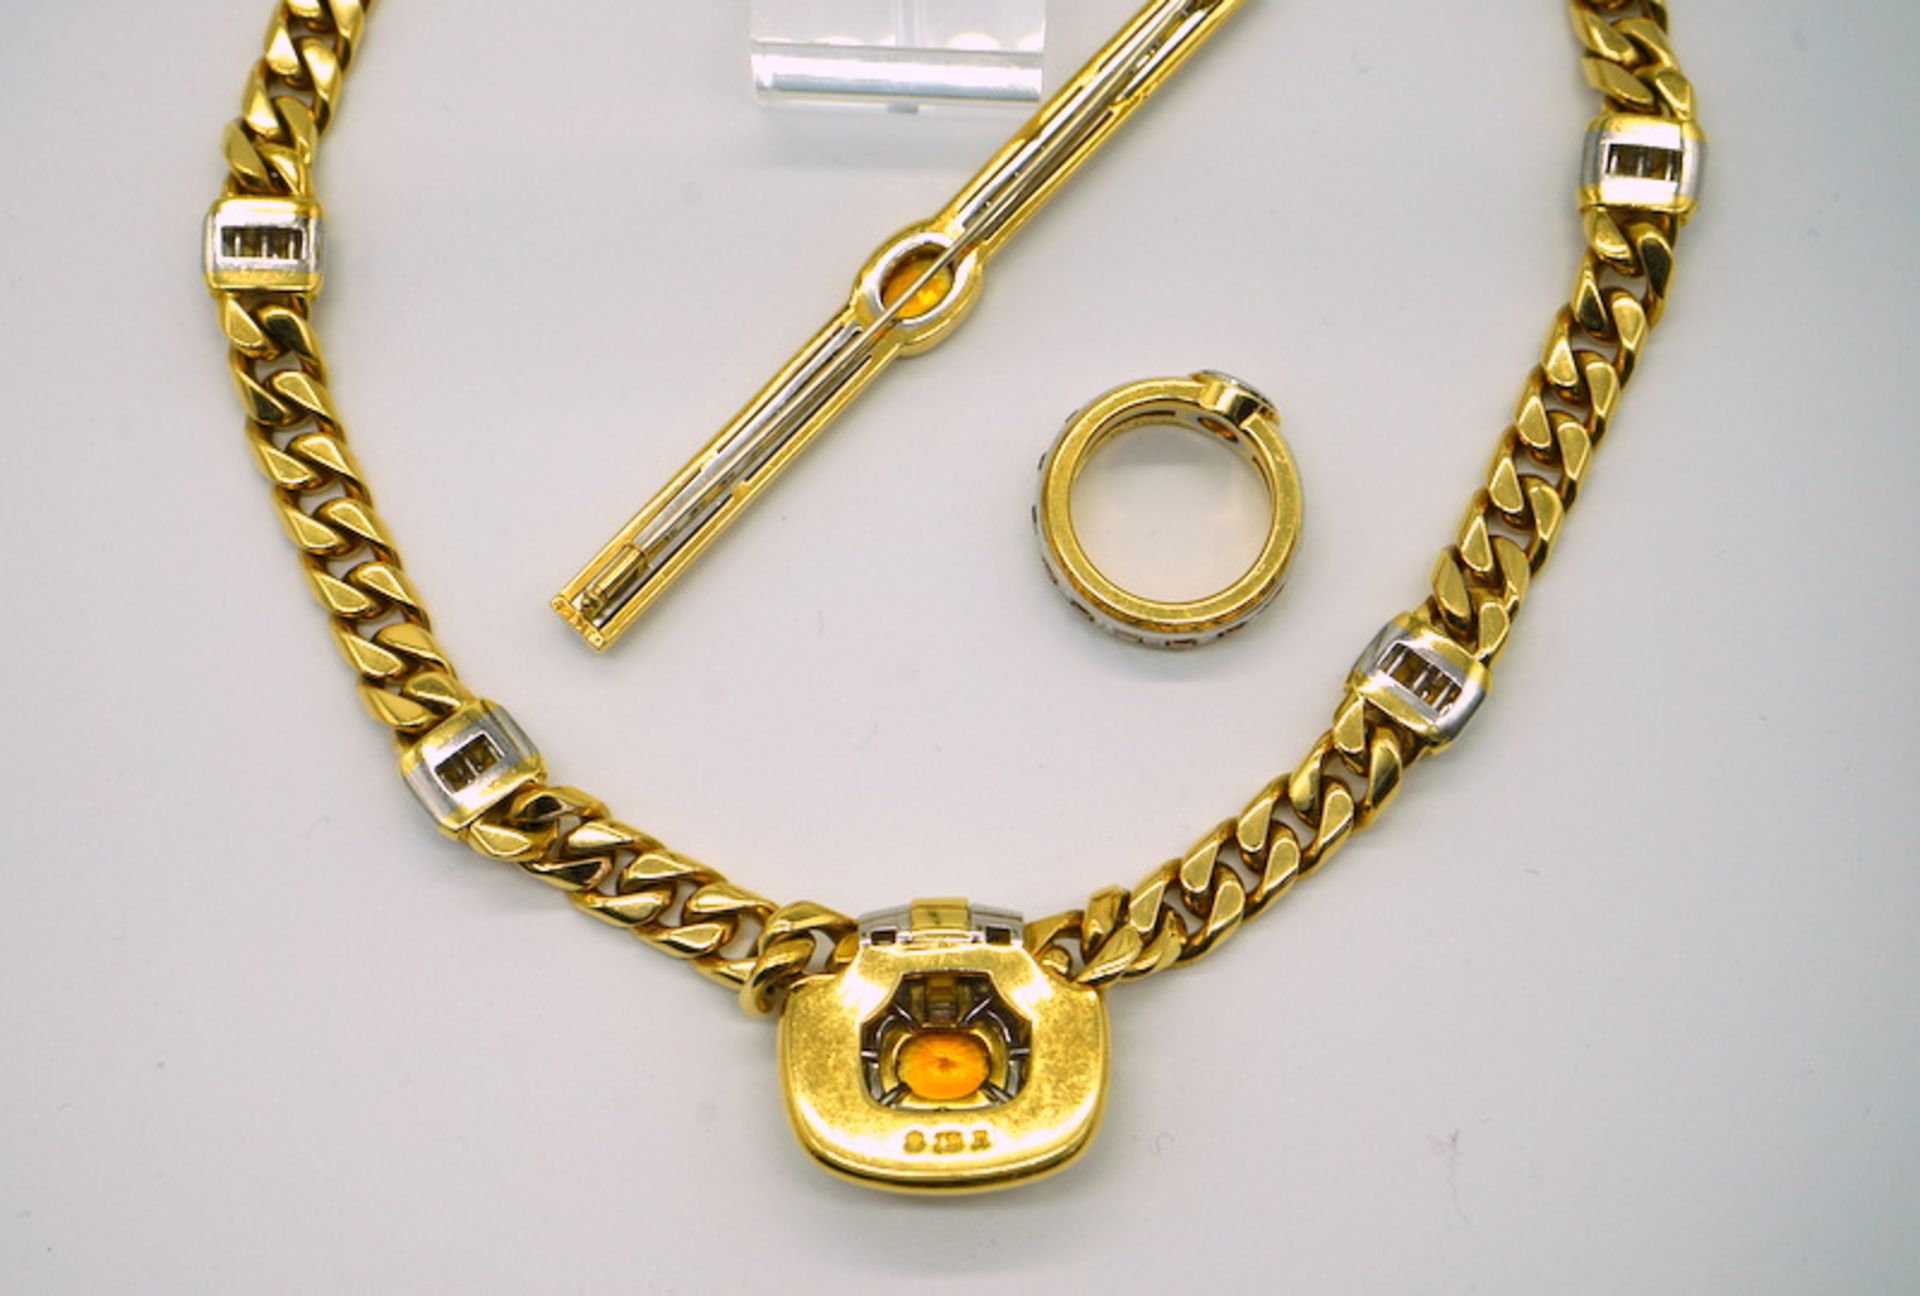 Parure mit Diamanten und gelben Saphiren, 750 GG, Juweliersanfertigung - Image 4 of 10